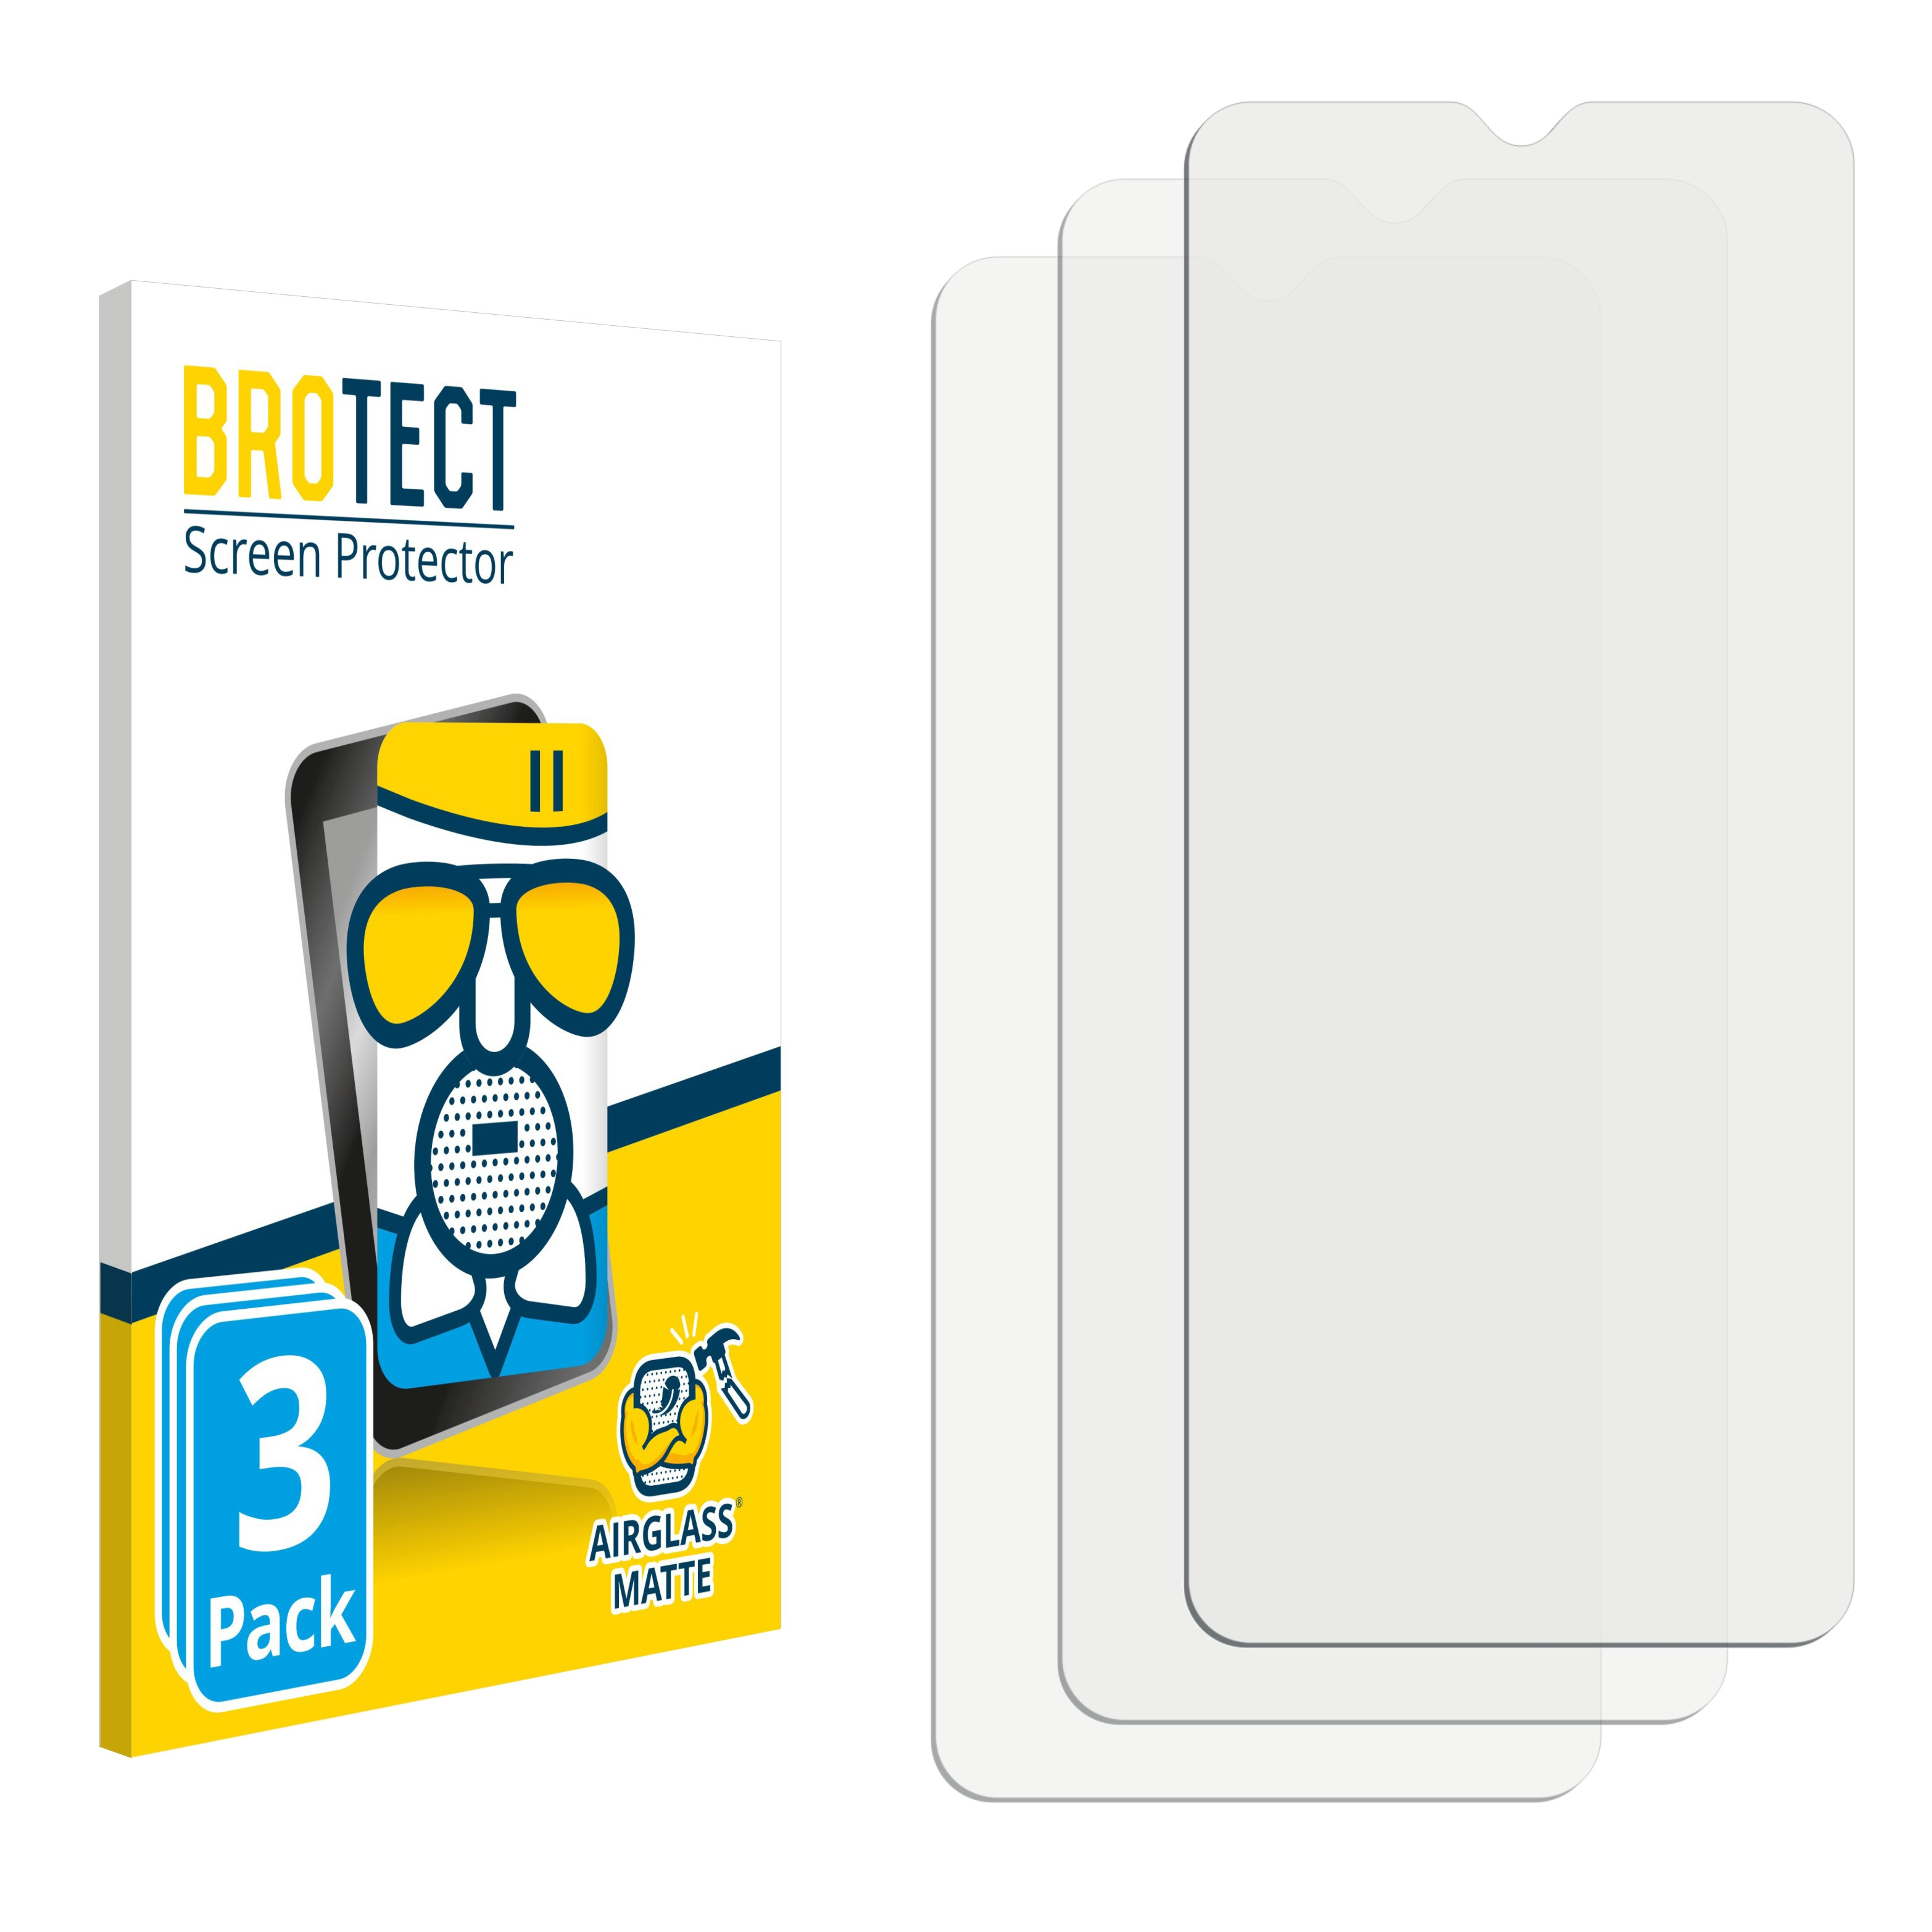 BROTECT 3x Airglass matte Alcatel 2019) Schutzfolie(für 3X